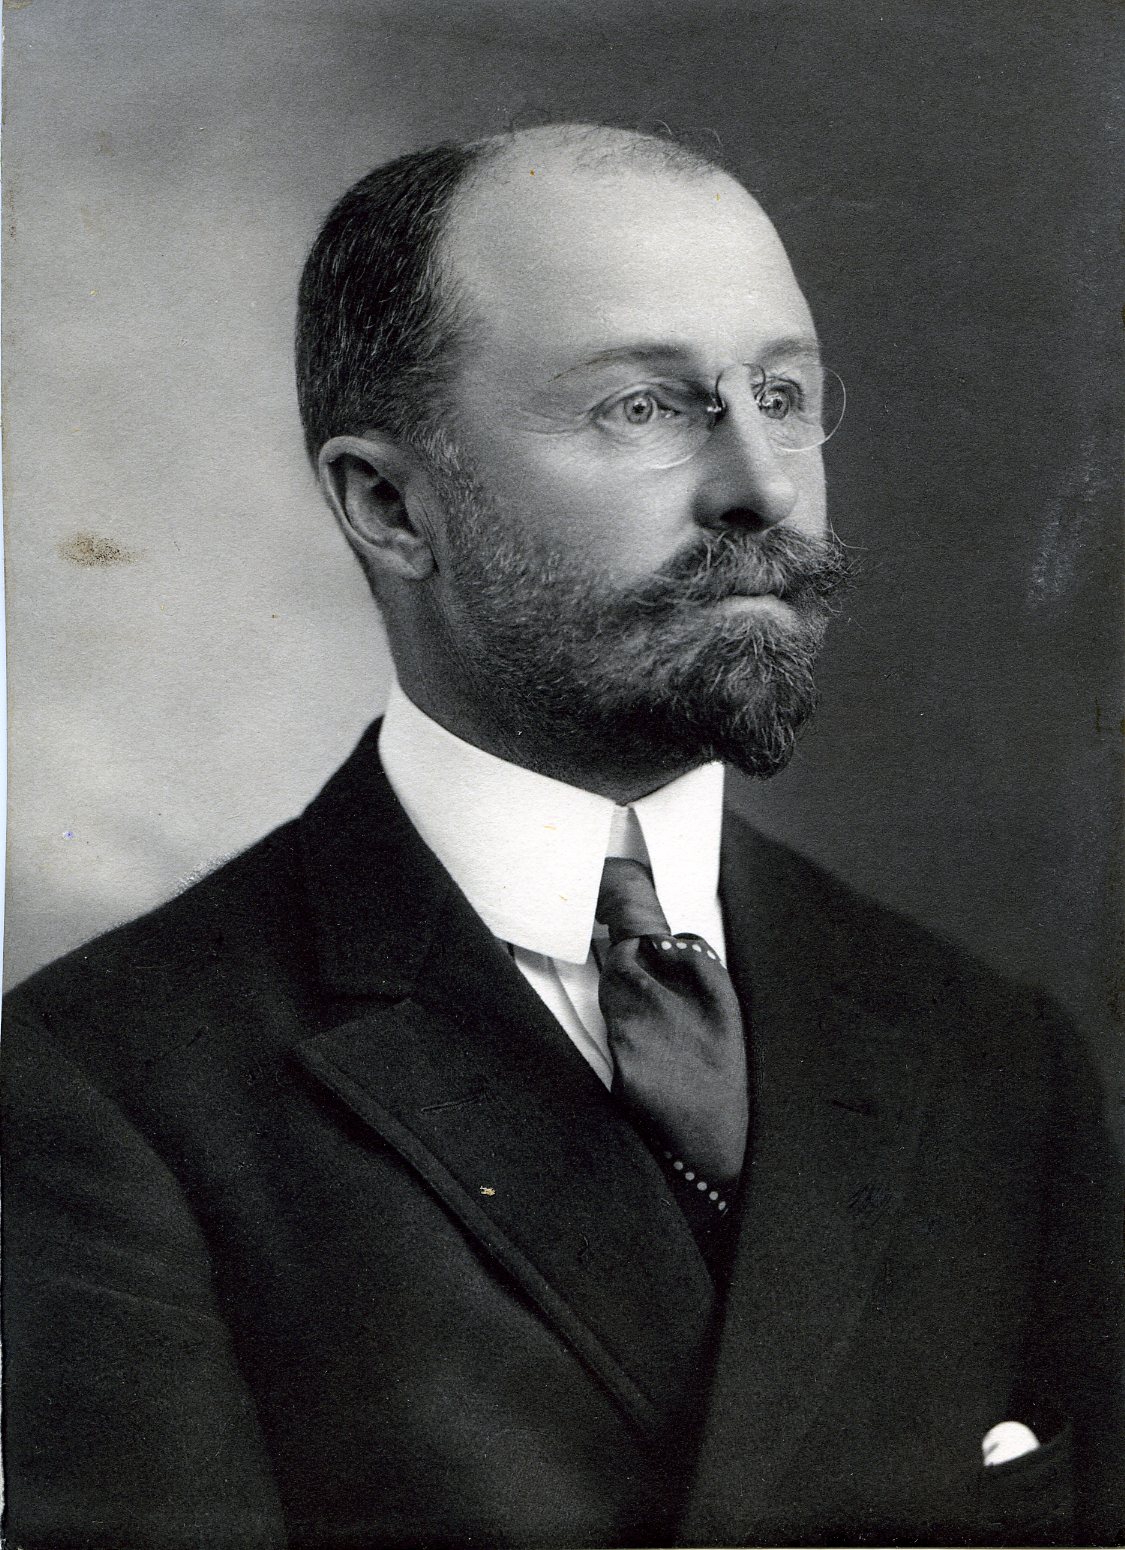 Member portrait of William J. Matheson